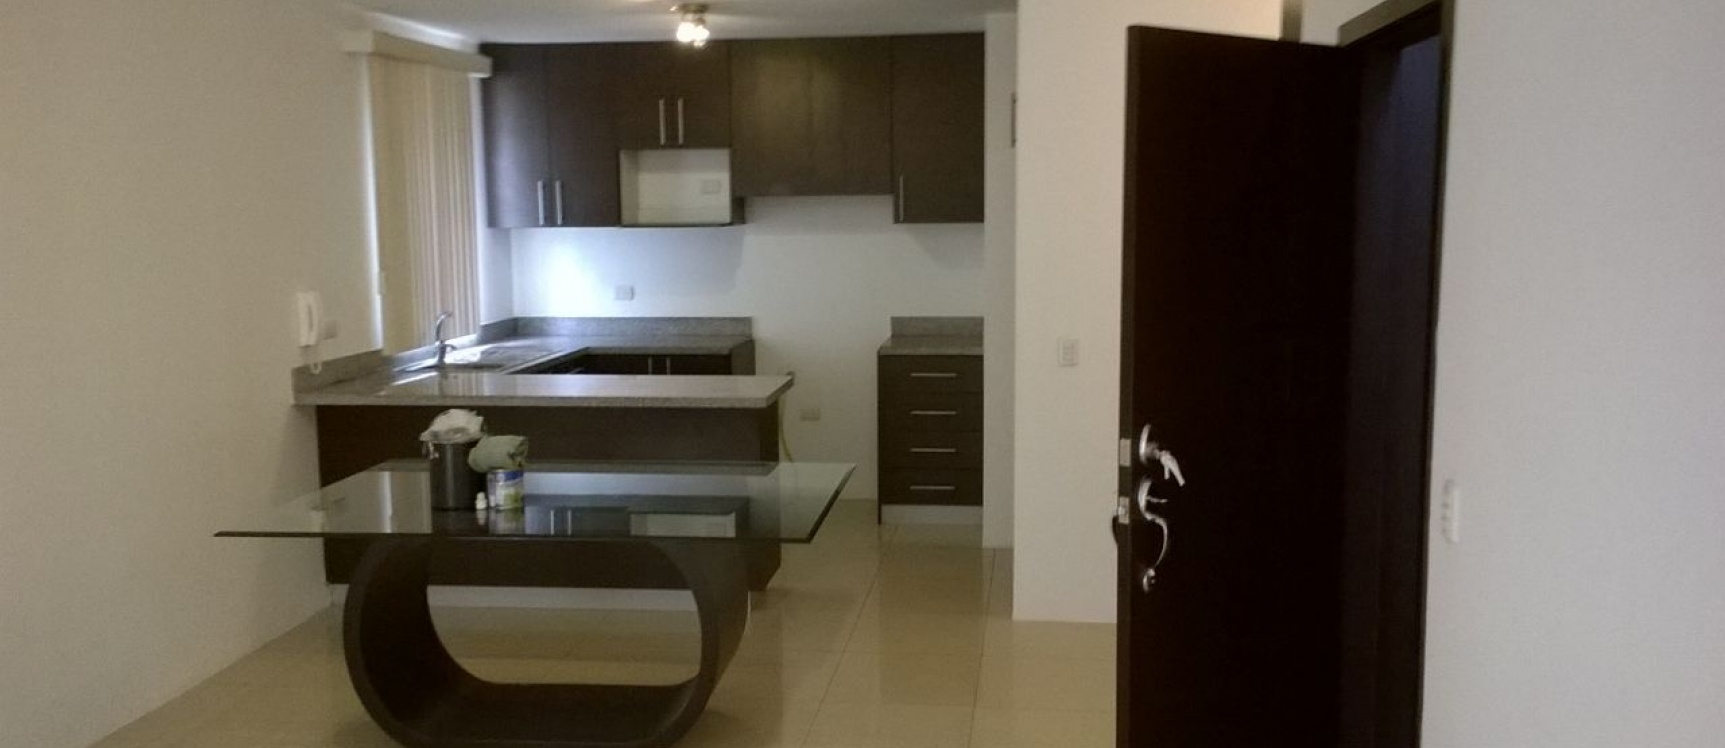 GeoBienes - Alquilo departamento 2 dormitorios 80 m2 - Ciudadela Puerto Azul Via La Costa - Plusvalia Guayaquil Casas de venta y alquiler Inmobiliaria Ecuador